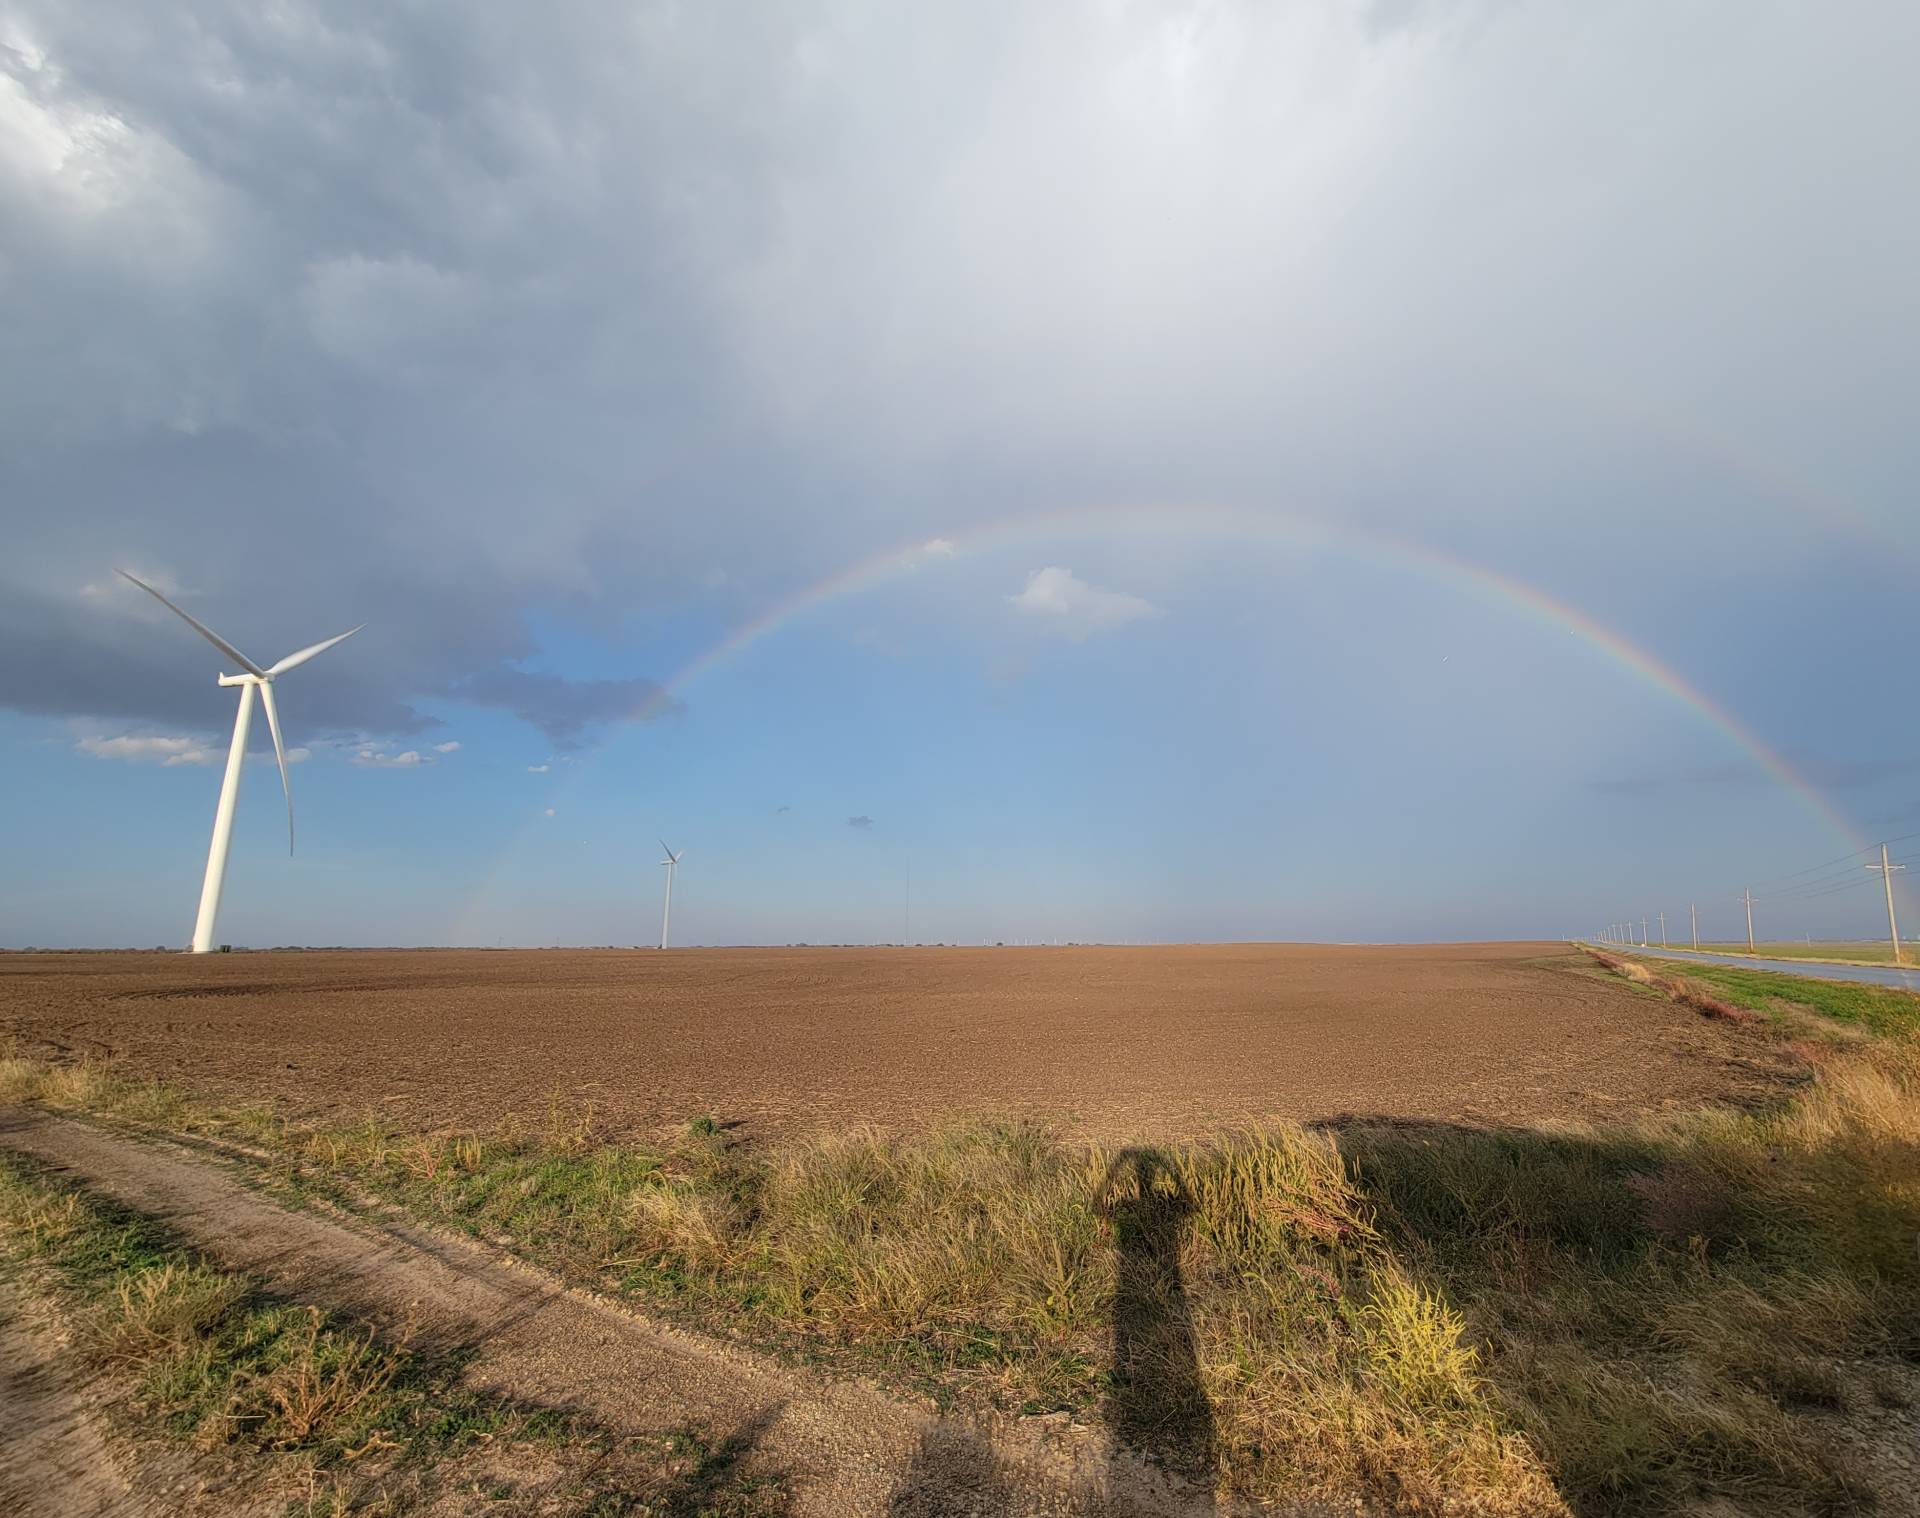 Awesome rainbow south of Pratt, Kansas.